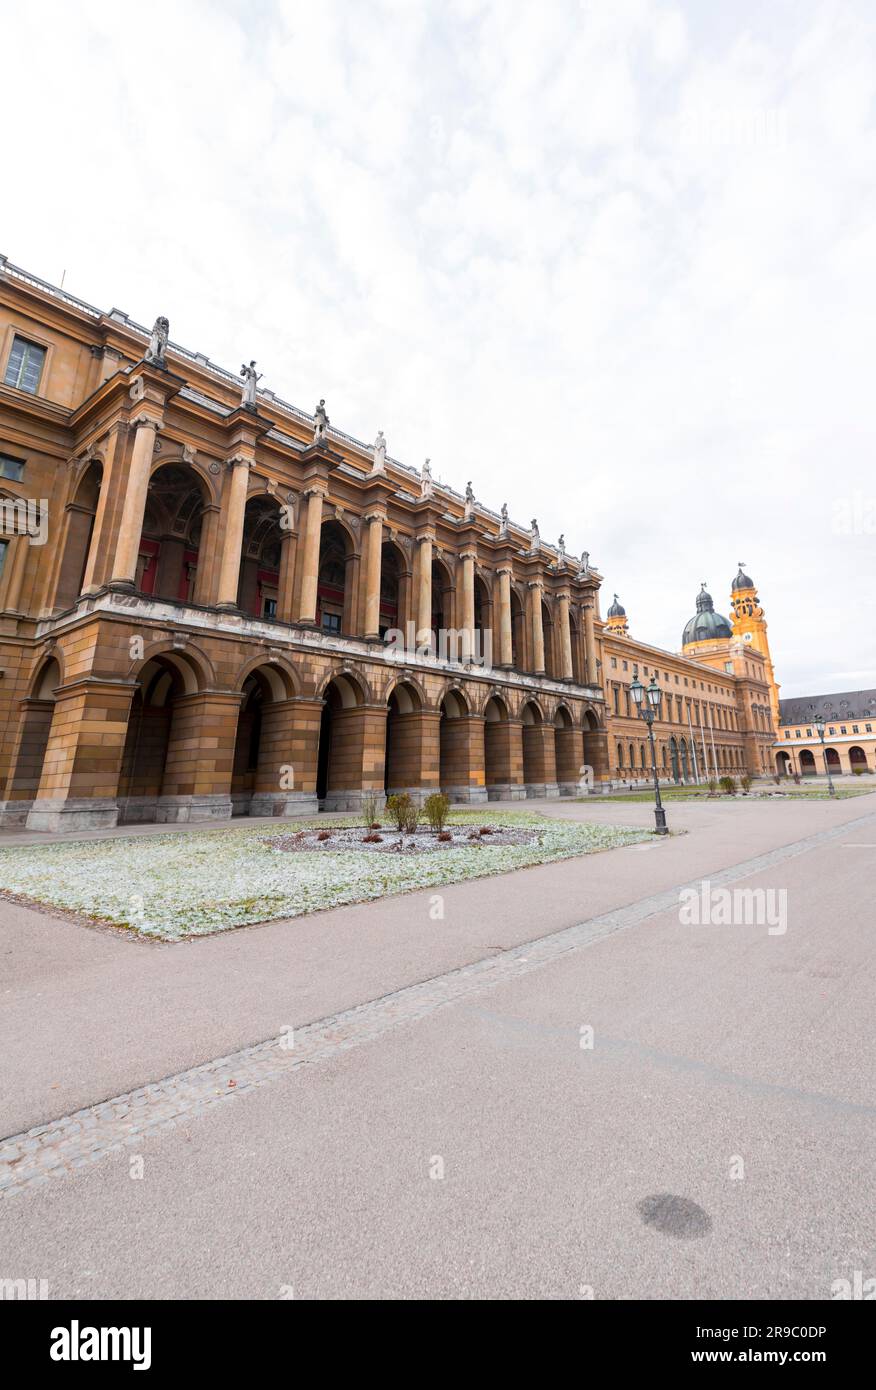 La Residenz nel centro di Monaco è l'ex palazzo reale dei re Wittelsbach di Baviera. Il più grande palazzo cittadino della Germania. Foto Stock